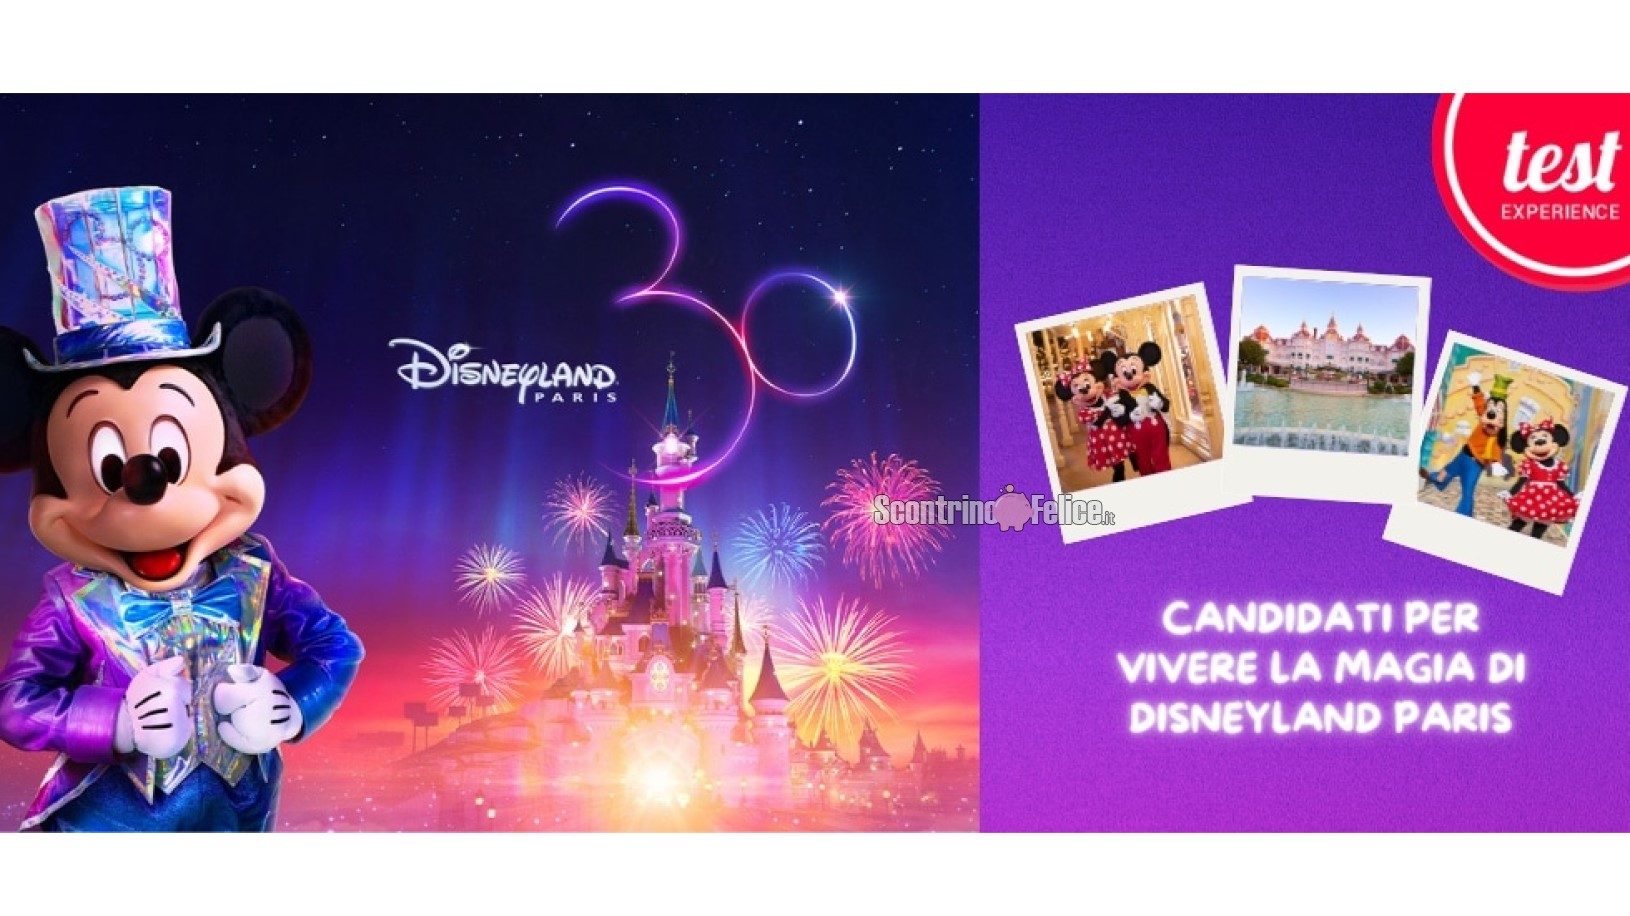 Disneyland Paris gratis con MammaCheTest: candidati e vivi un weekend magico con la tua famiglia!